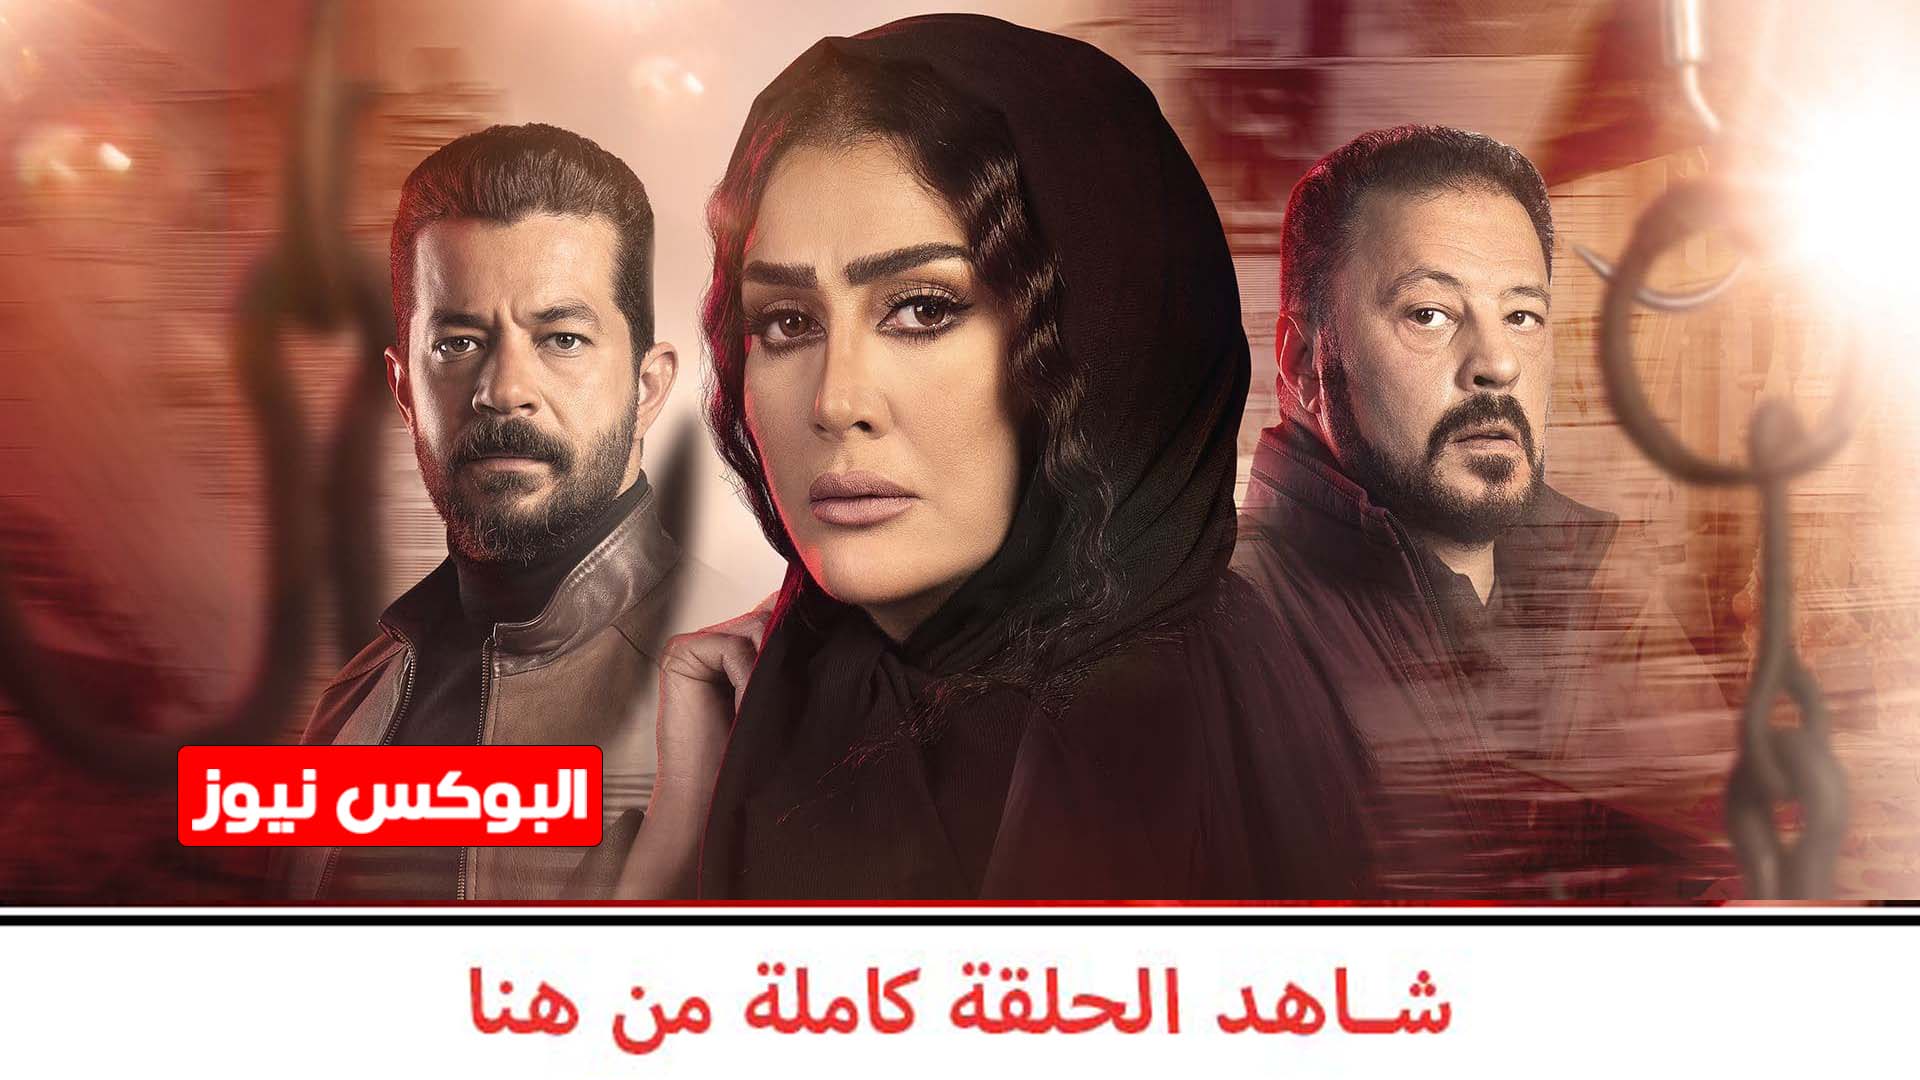 مسلسل لحم غزال الحلقة 1 الأولى كاملة بجودة عالية.. بطولة غادة عبد الرازق